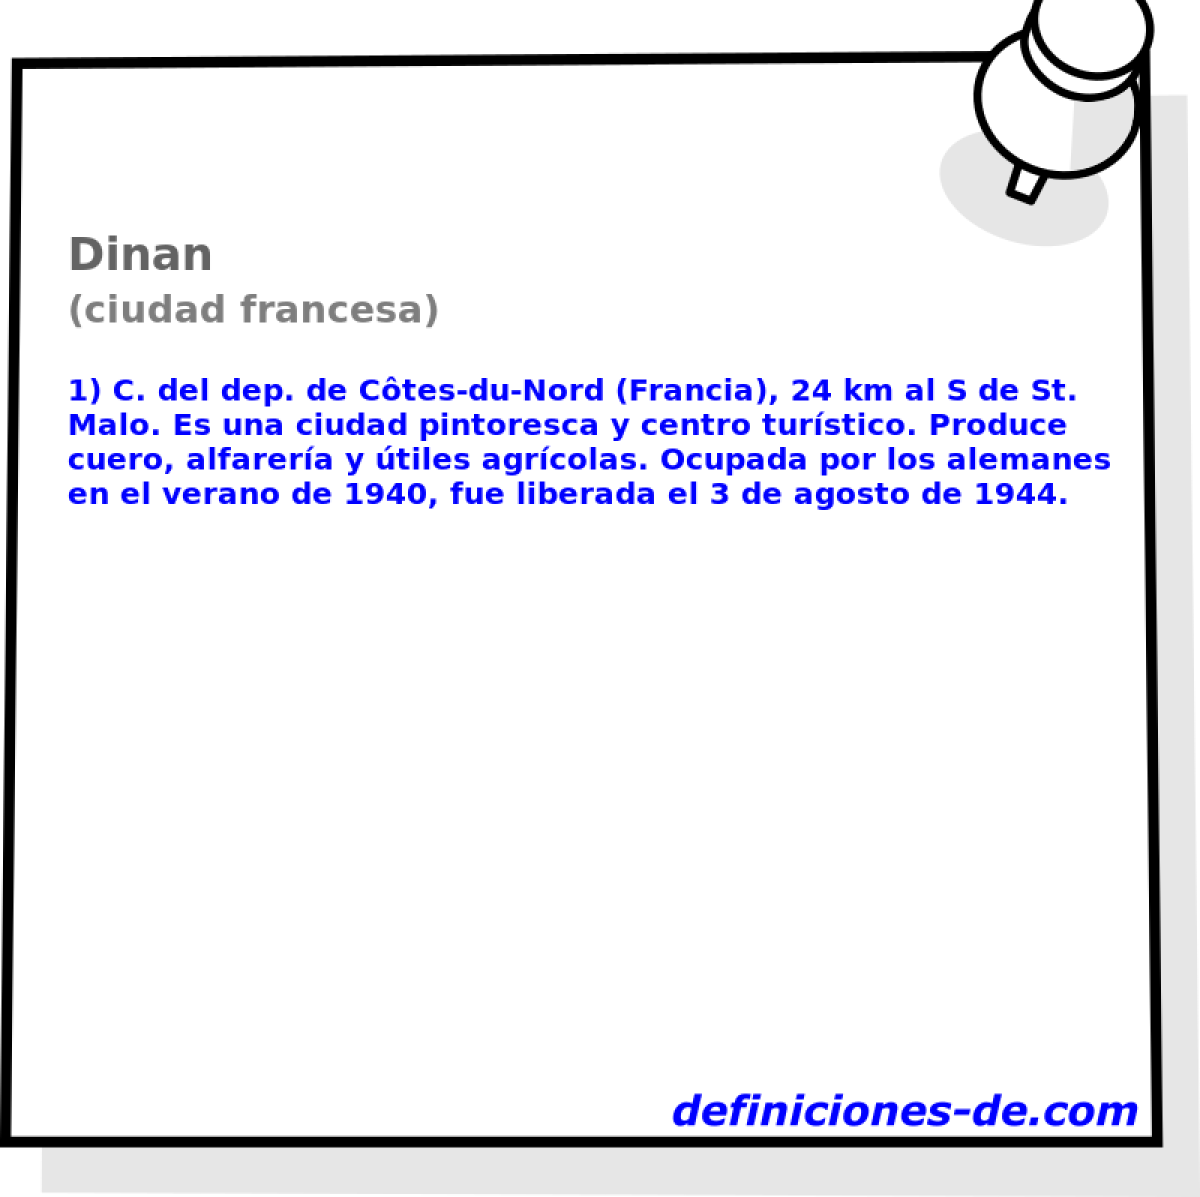 Dinan (ciudad francesa)